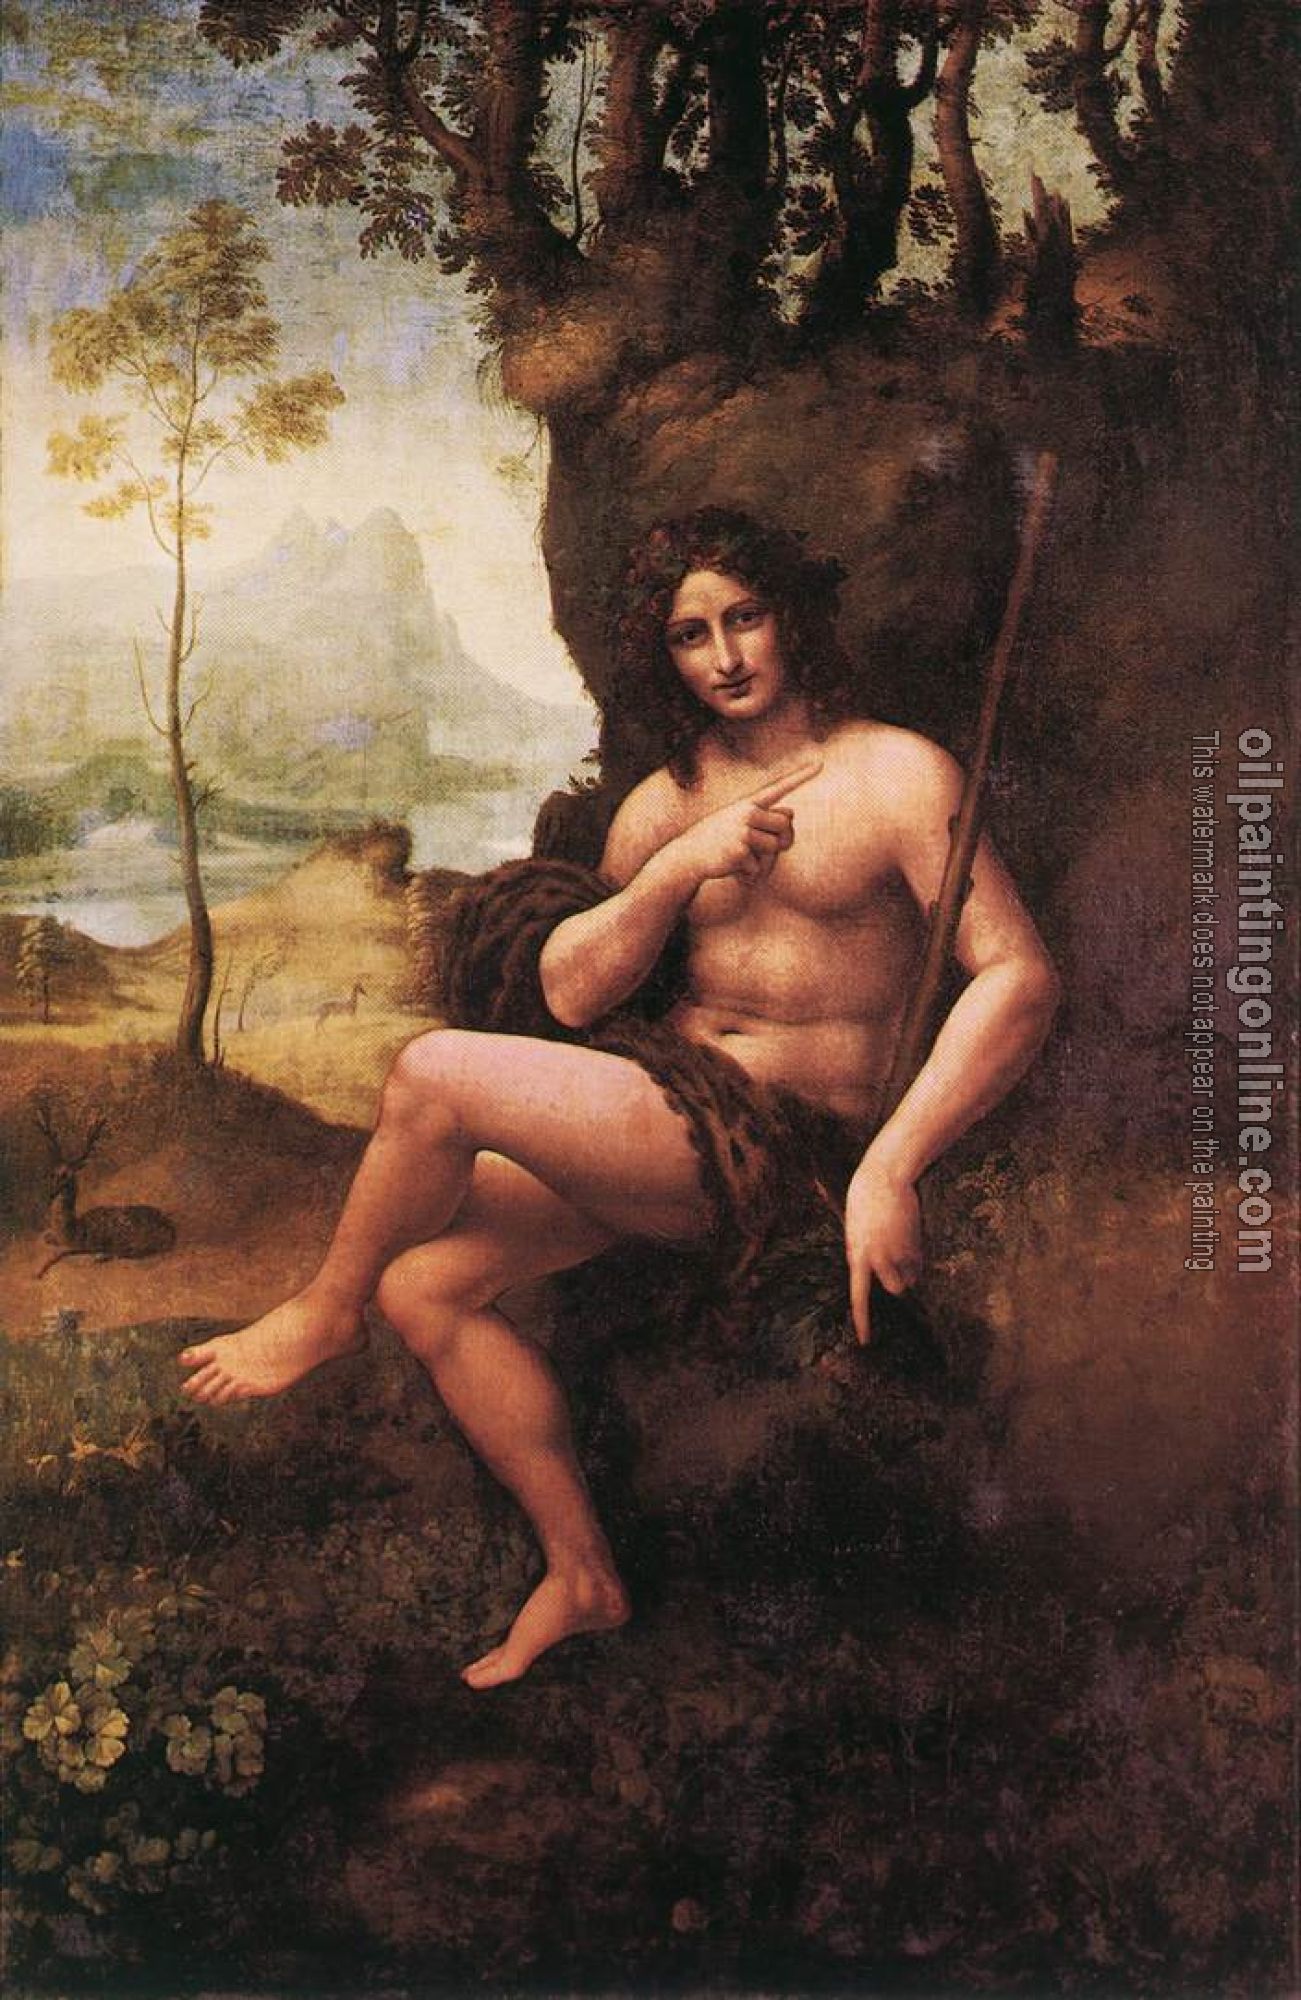 Vinci, Leonardo da - oil painting